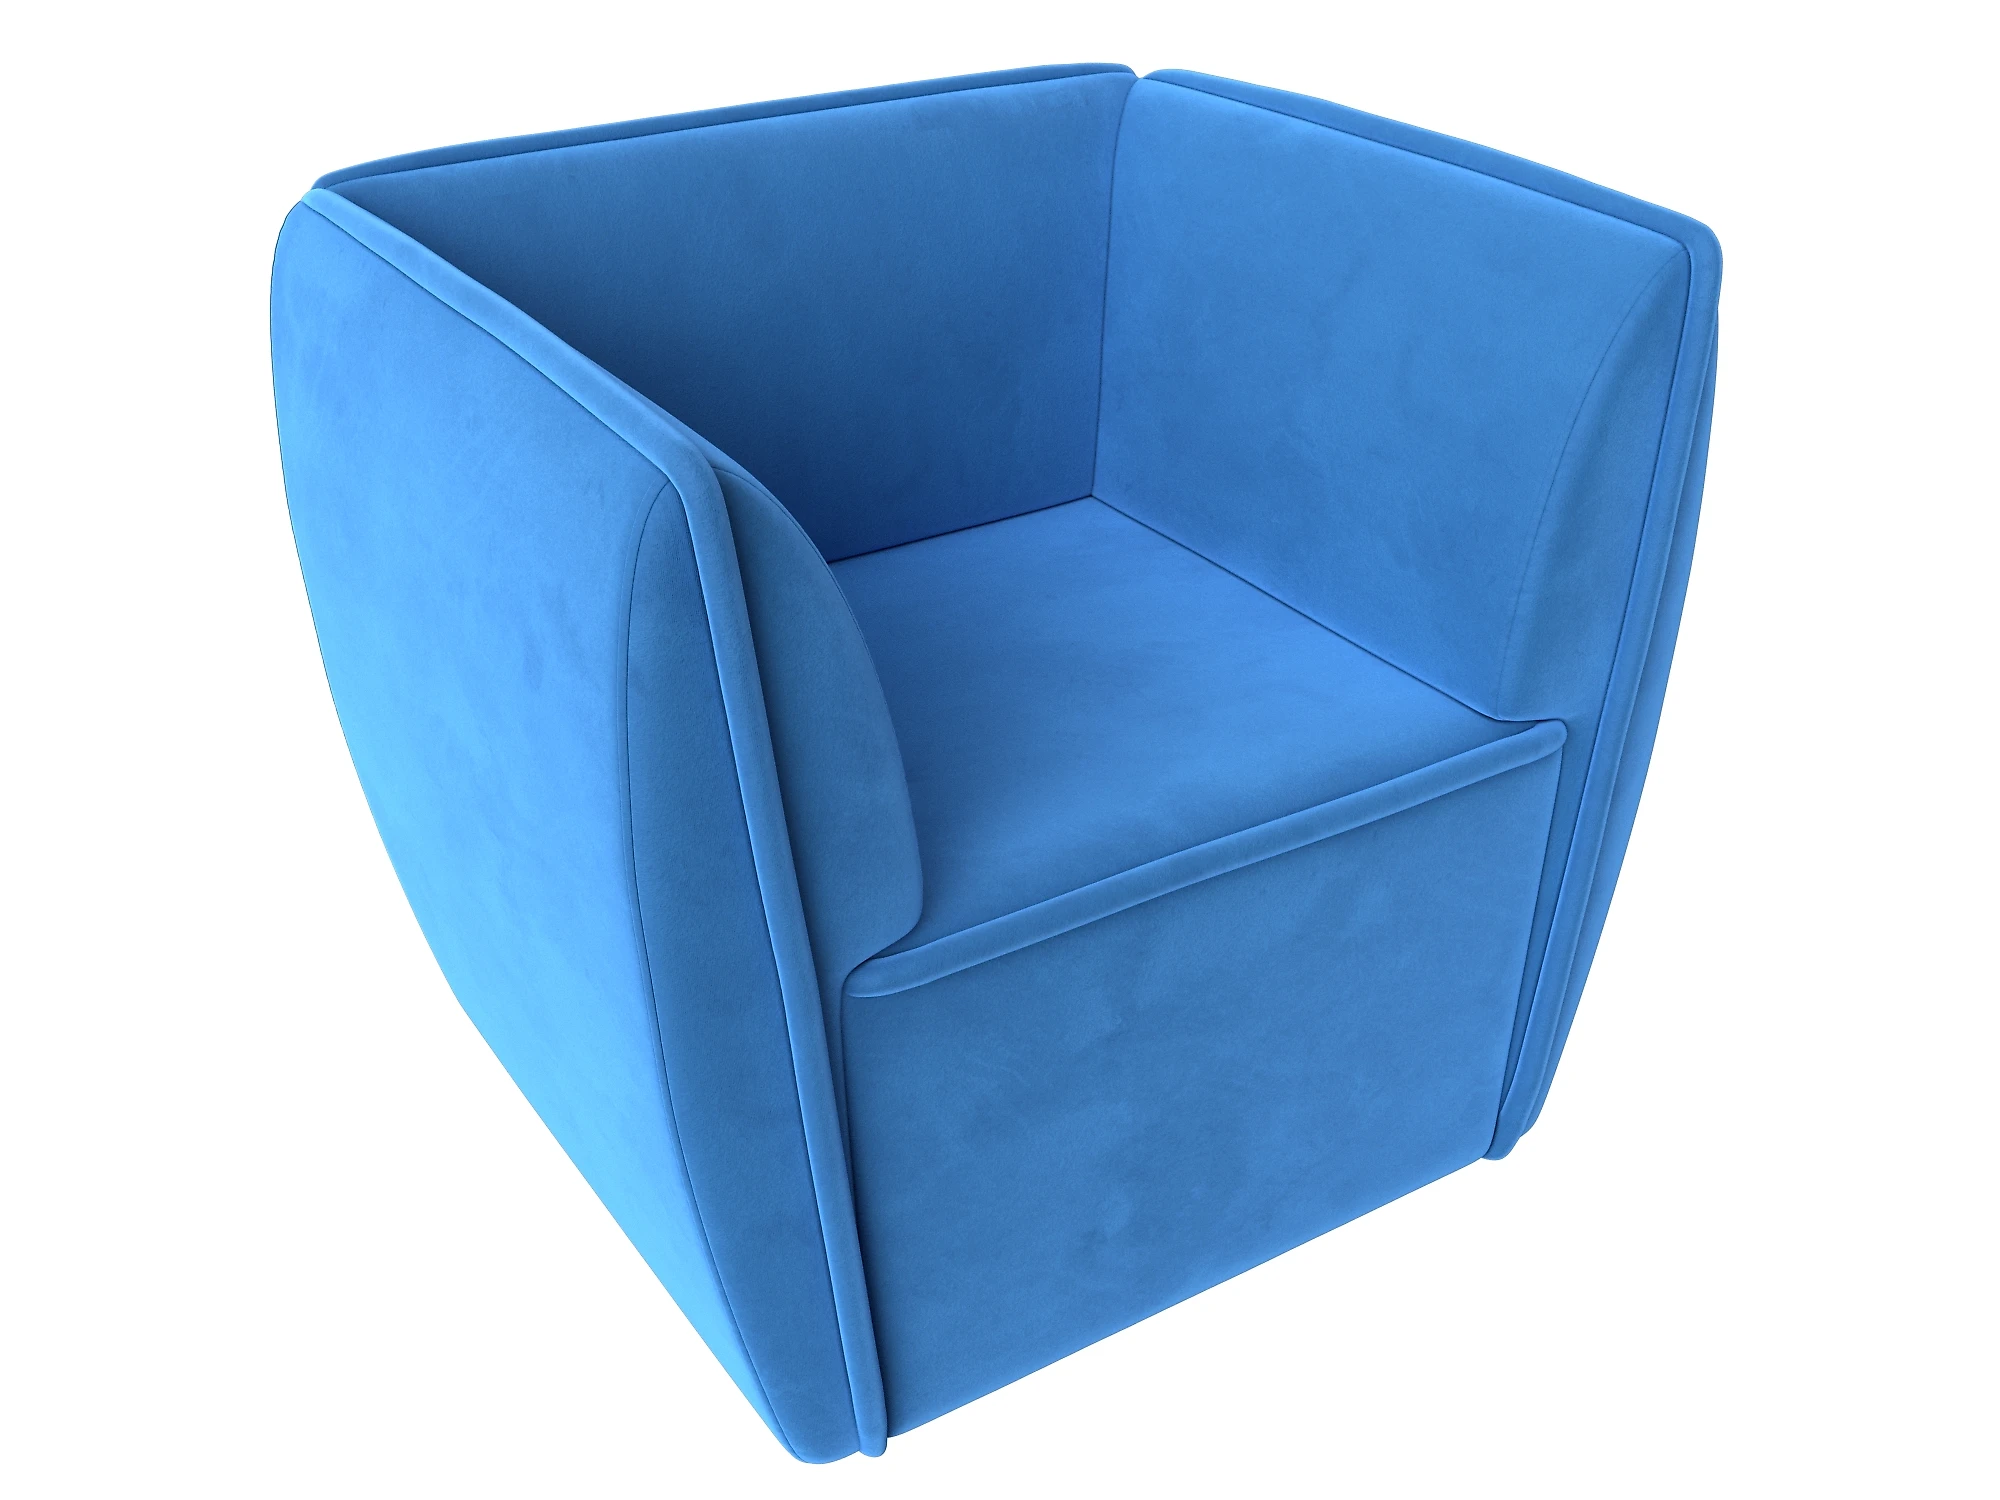  голубое кресло  Бергамо Плюш Дизайн 5